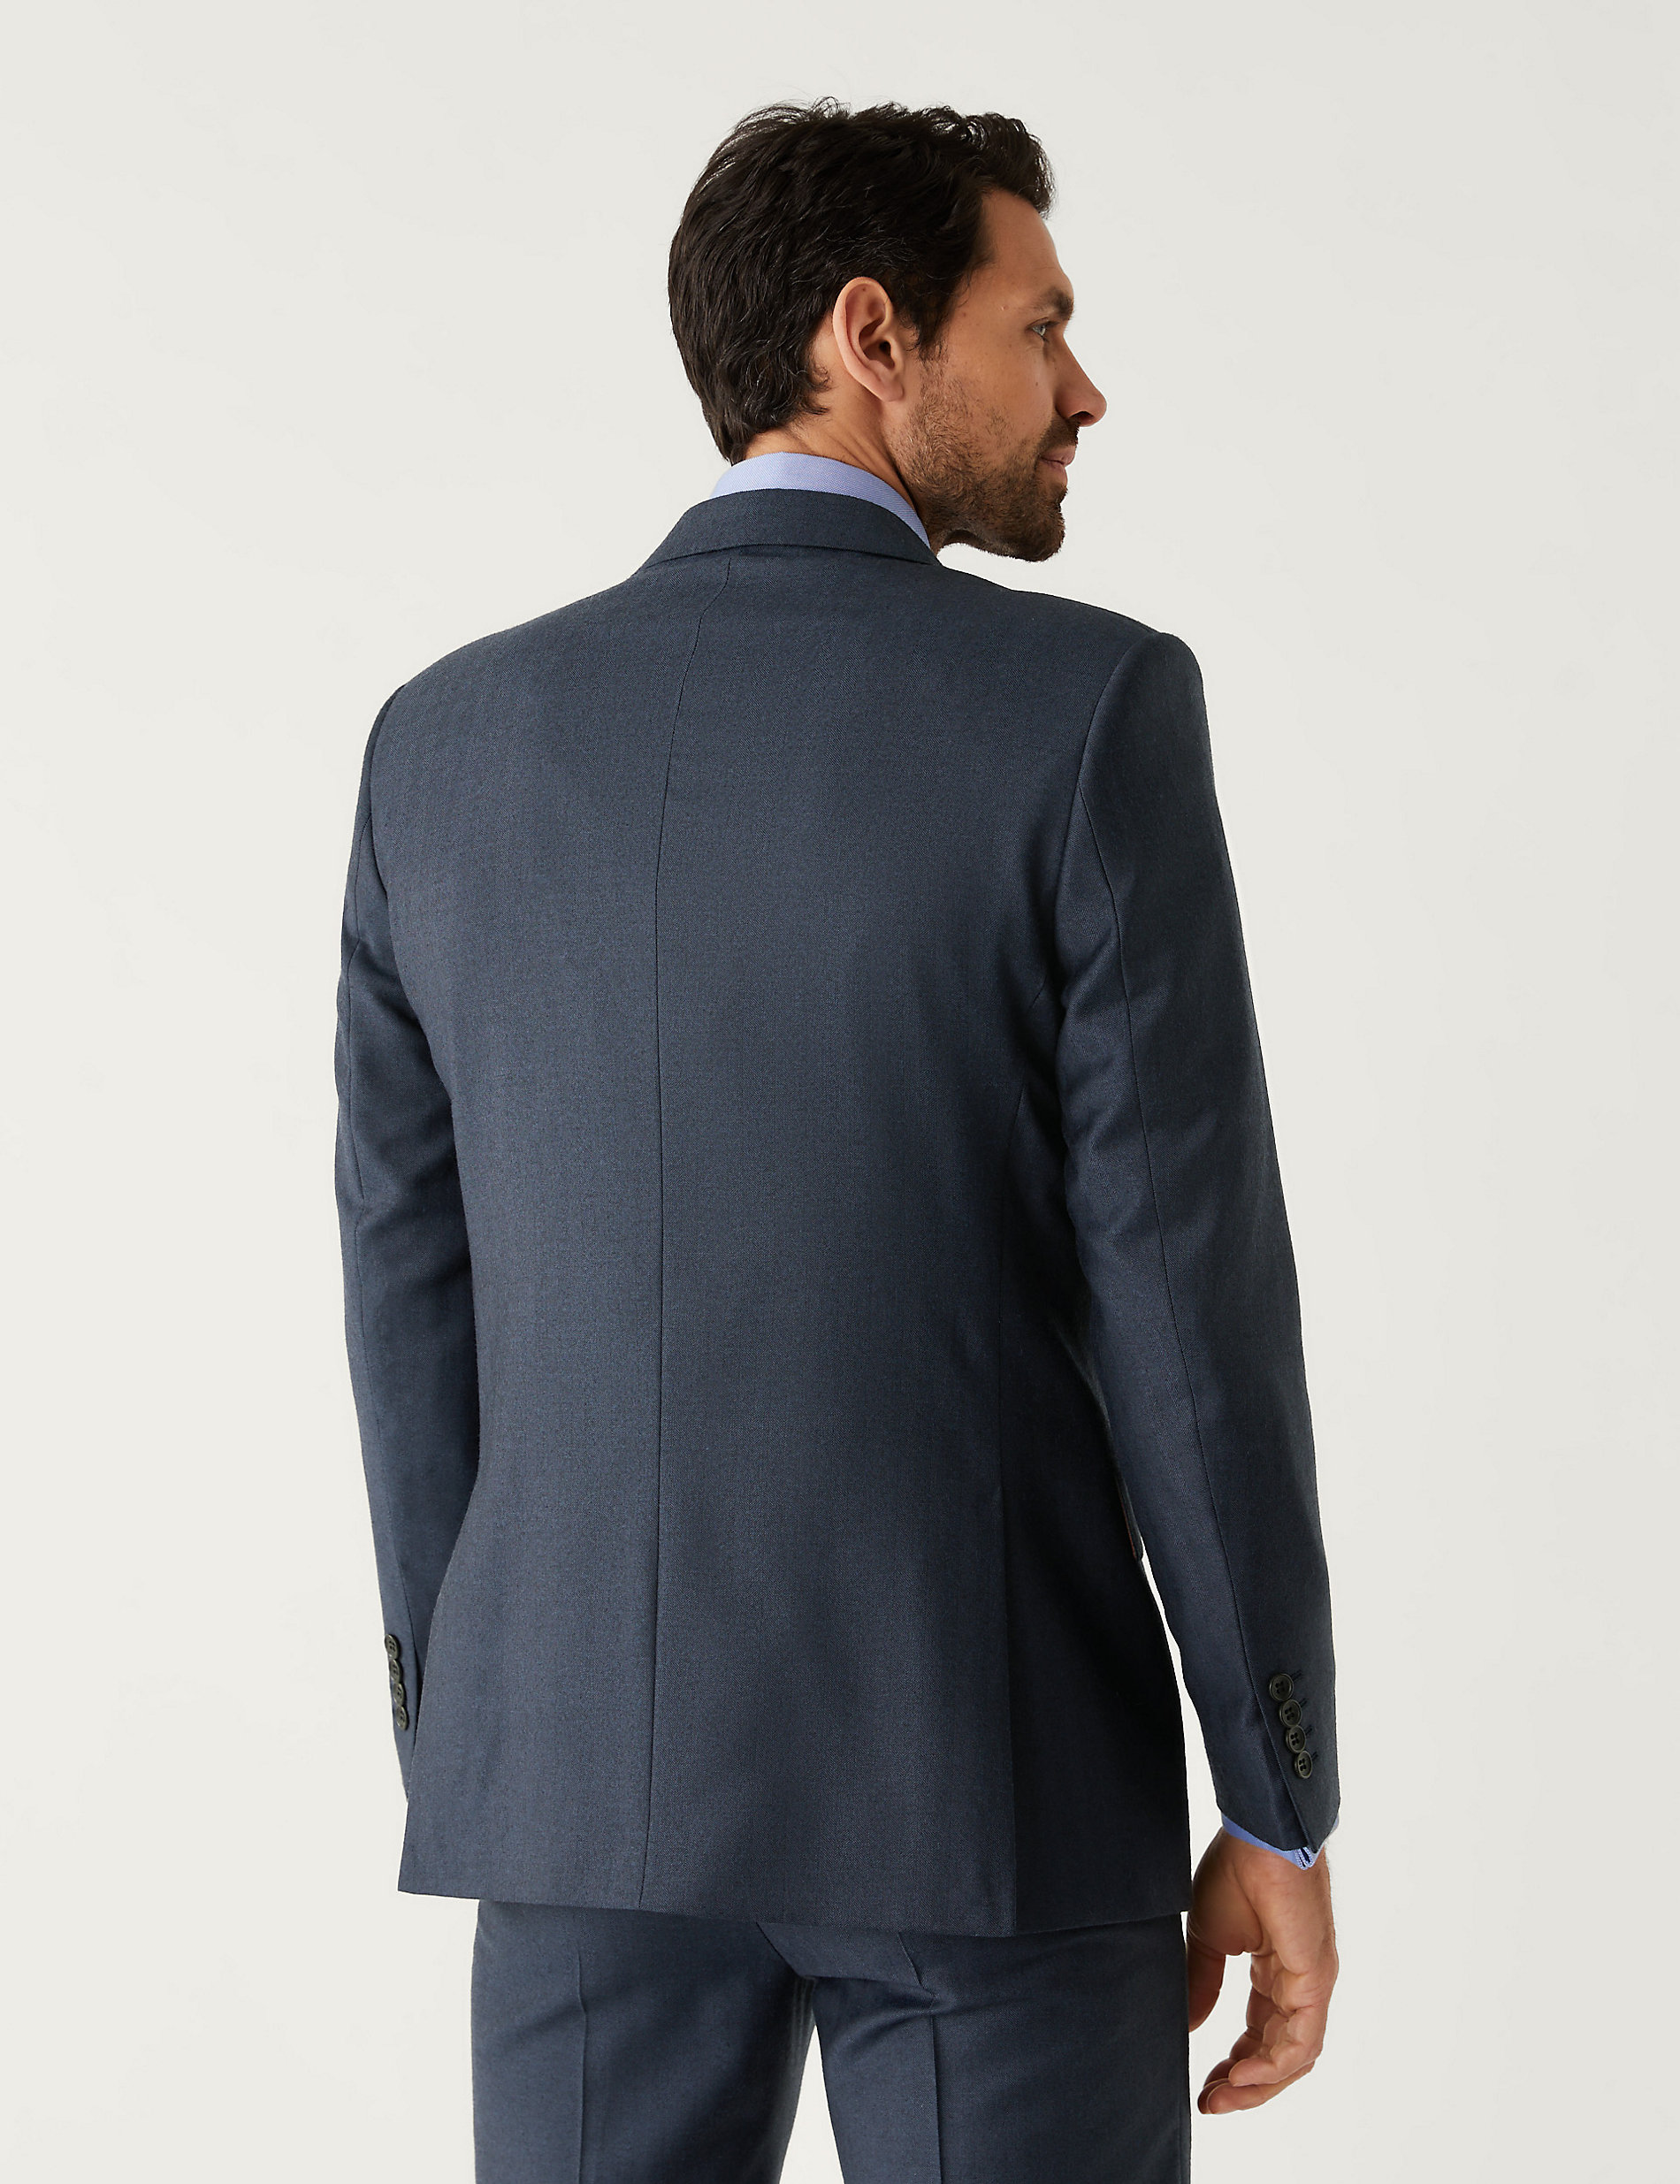 Κοστούμι σε κανονική γραμμή με σχέδιο ψαροκόκαλο από 100% βρετανικό μαλλί